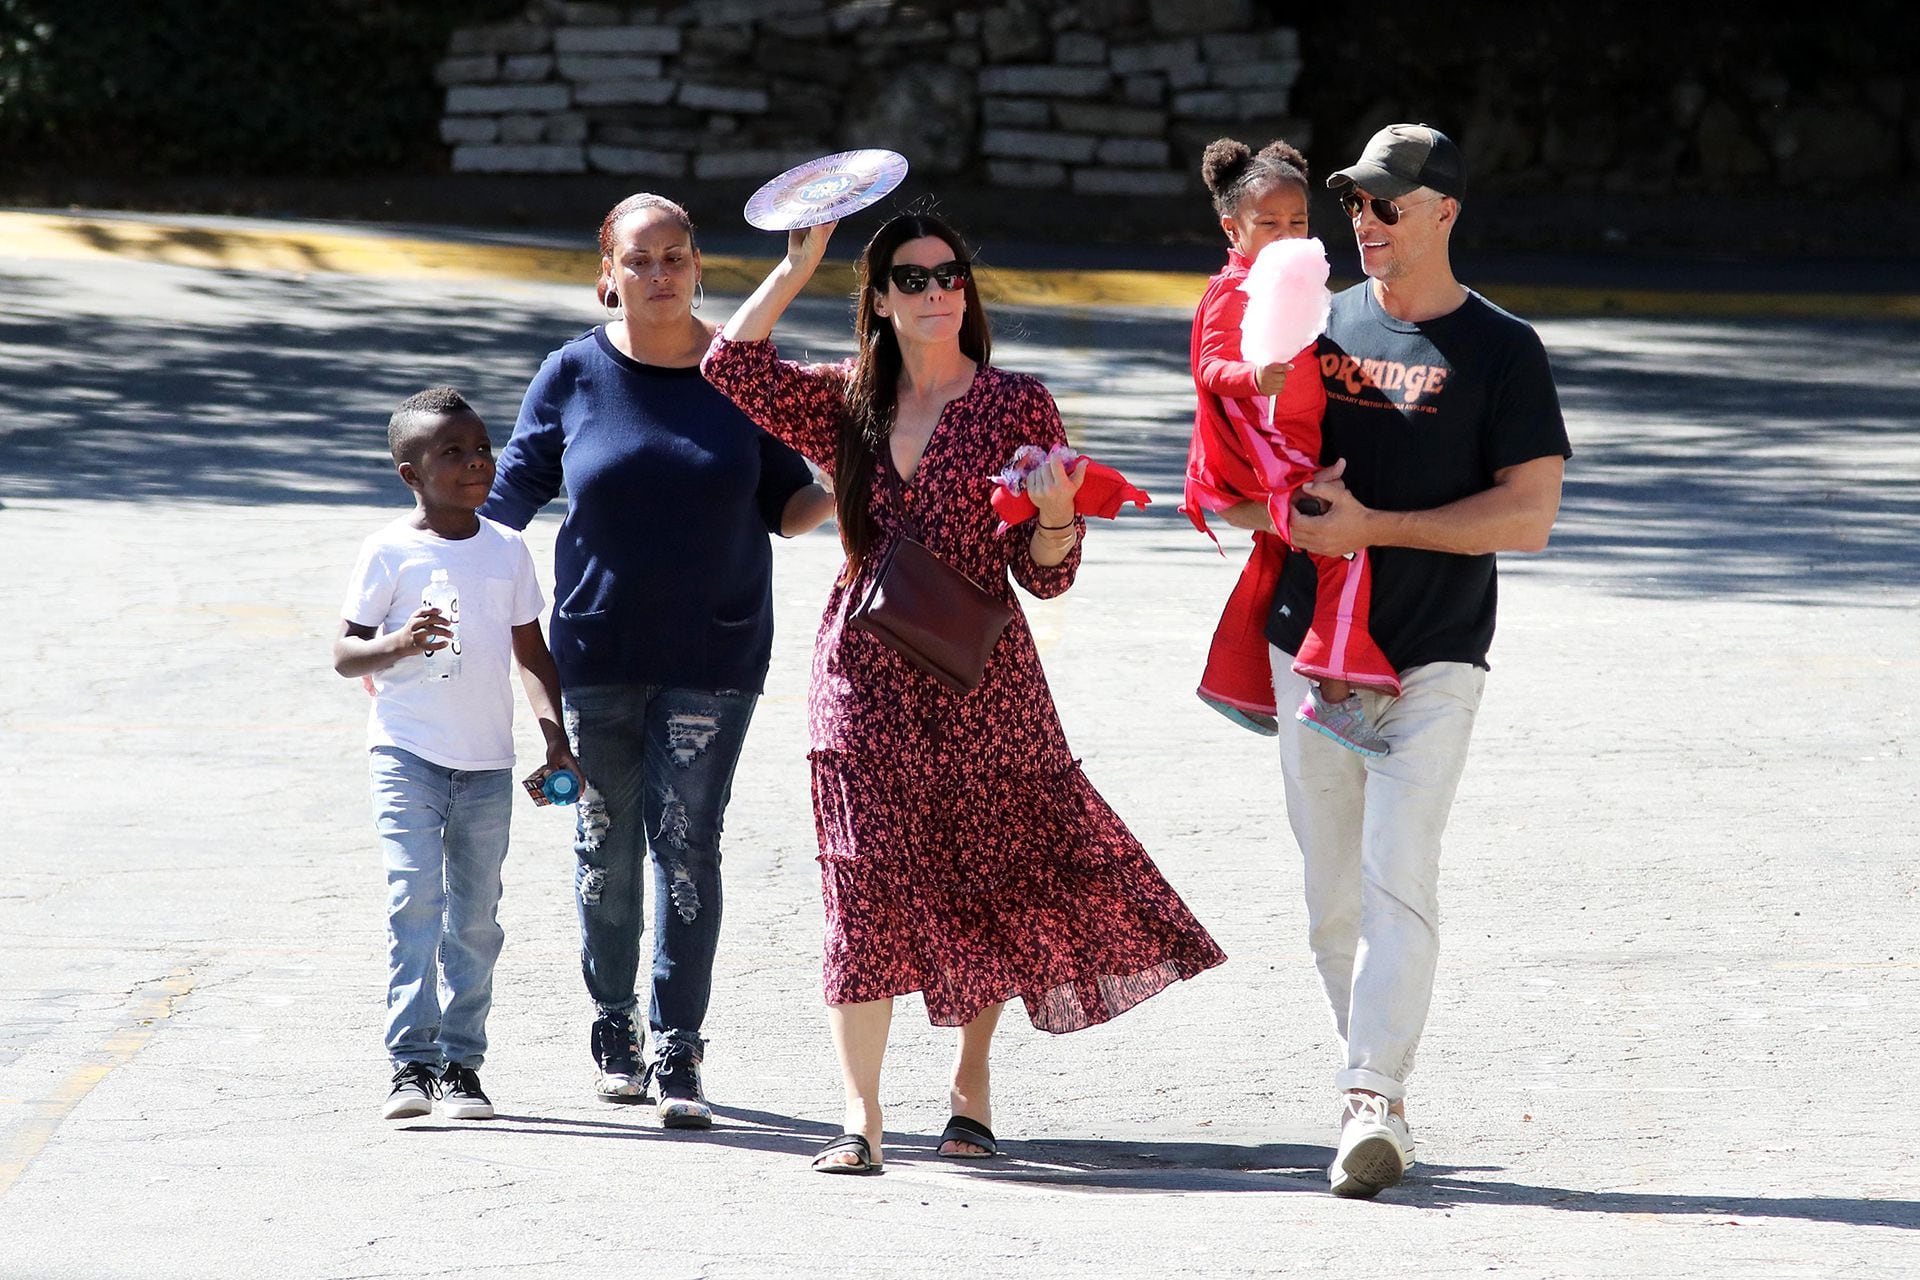 Sandra Bullock y su novio, Bryan Randall, salen con sus hijos en Los Ángeles. Los Angeles, October 22, 2017. Photo © 2017 The Image Direct/The Grosby Group

